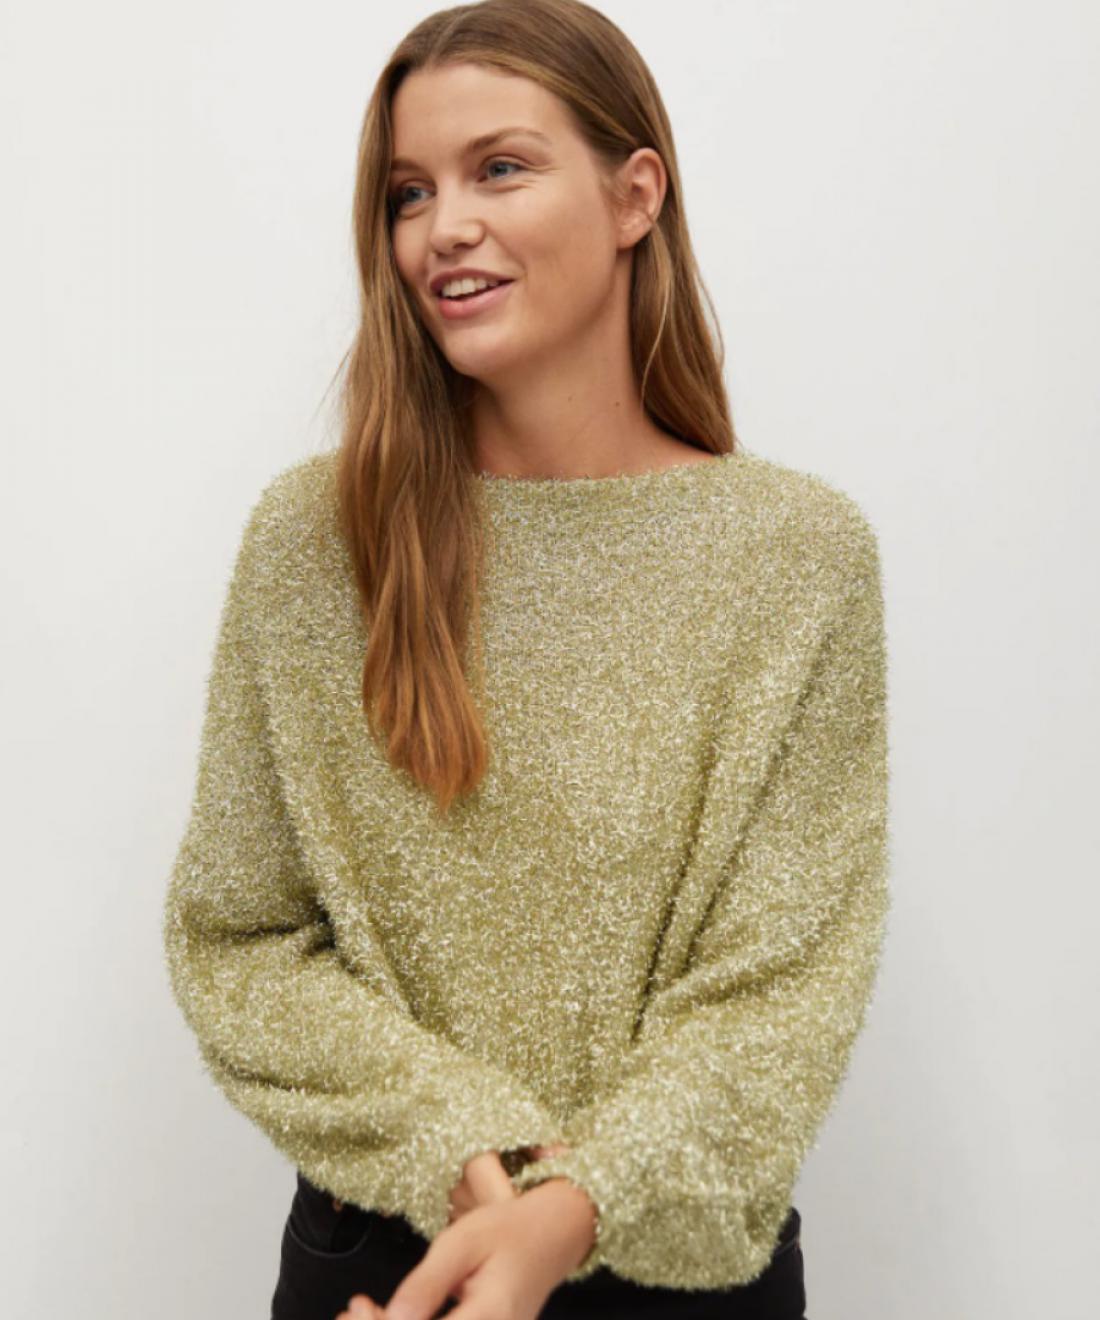 Bleščeč pulover, Mango outlet, 19,99€